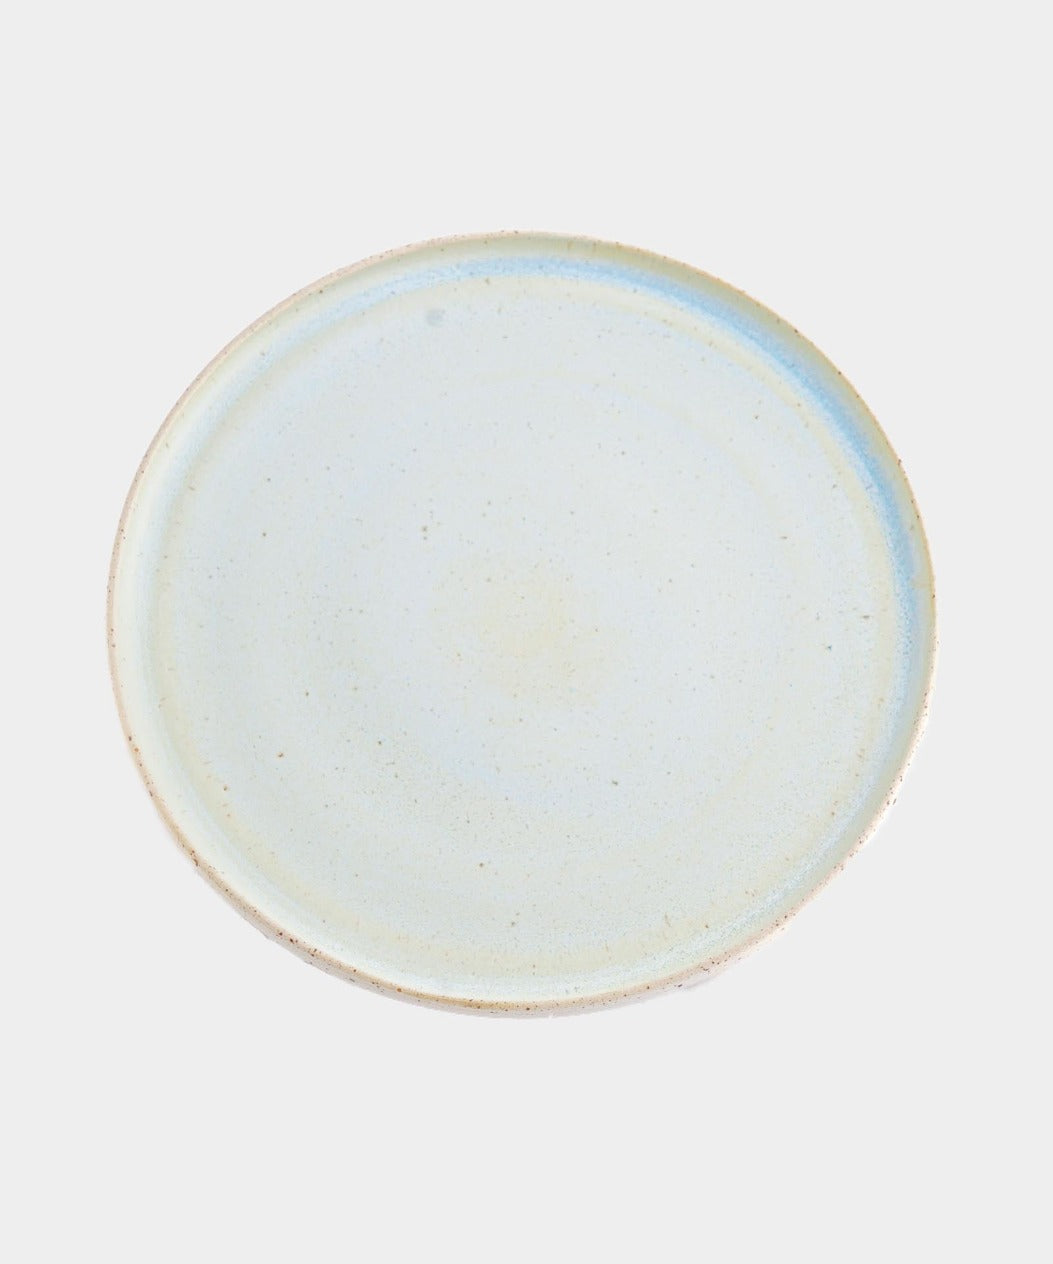 Håndlavet Keramik middagstallerken | AQUA by Vang | Kerama